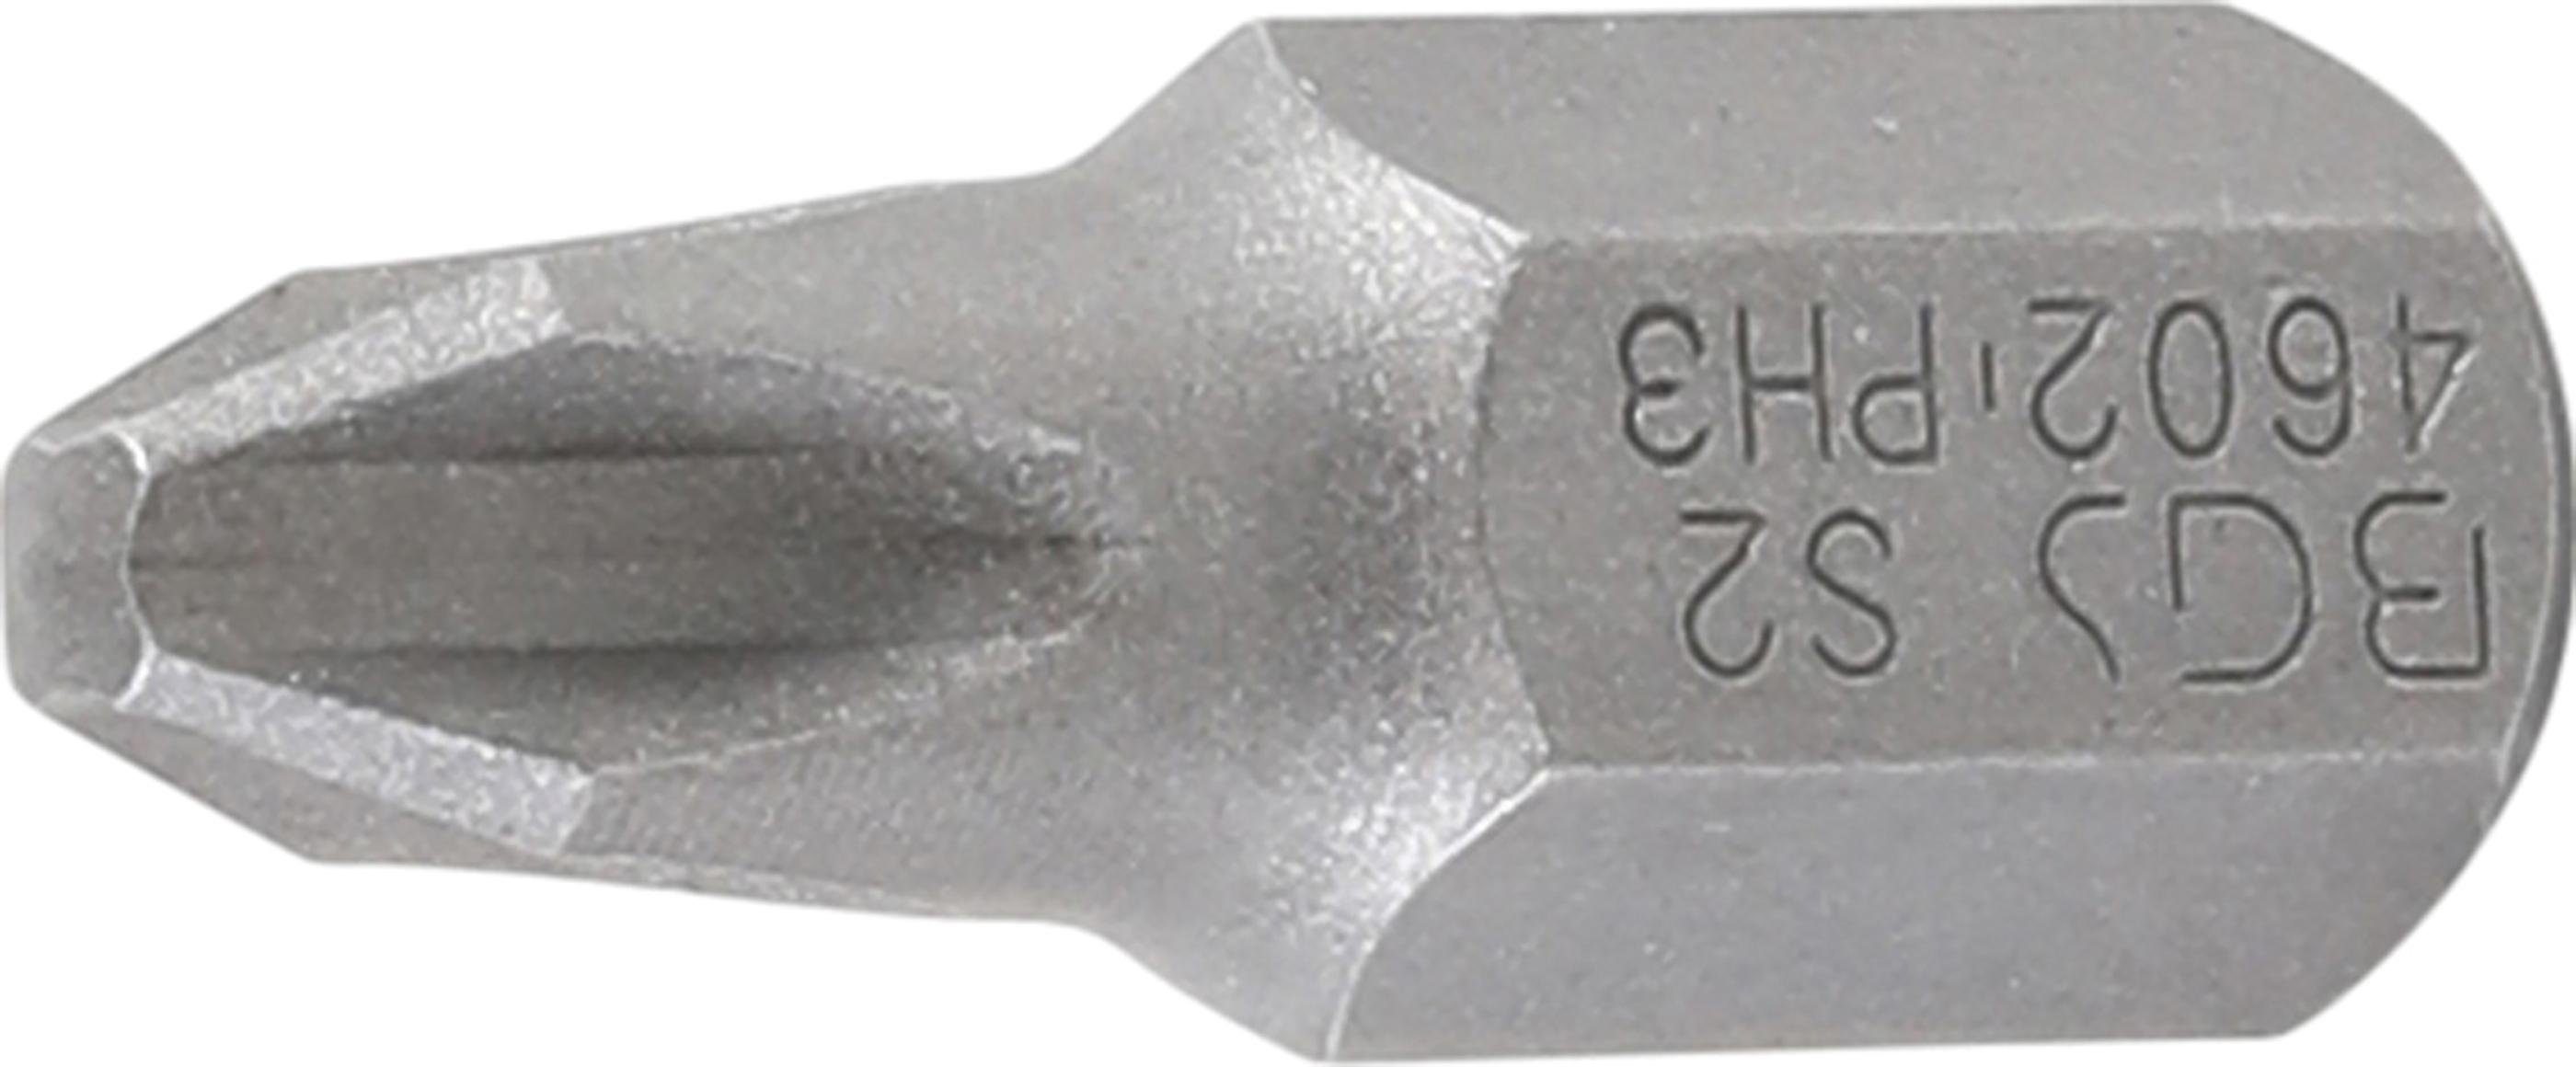 BGS technic Bit-Schraubendreher Bit, Antrieb Außensechskant 10 mm (3/8), Kreuzschlitz PH3